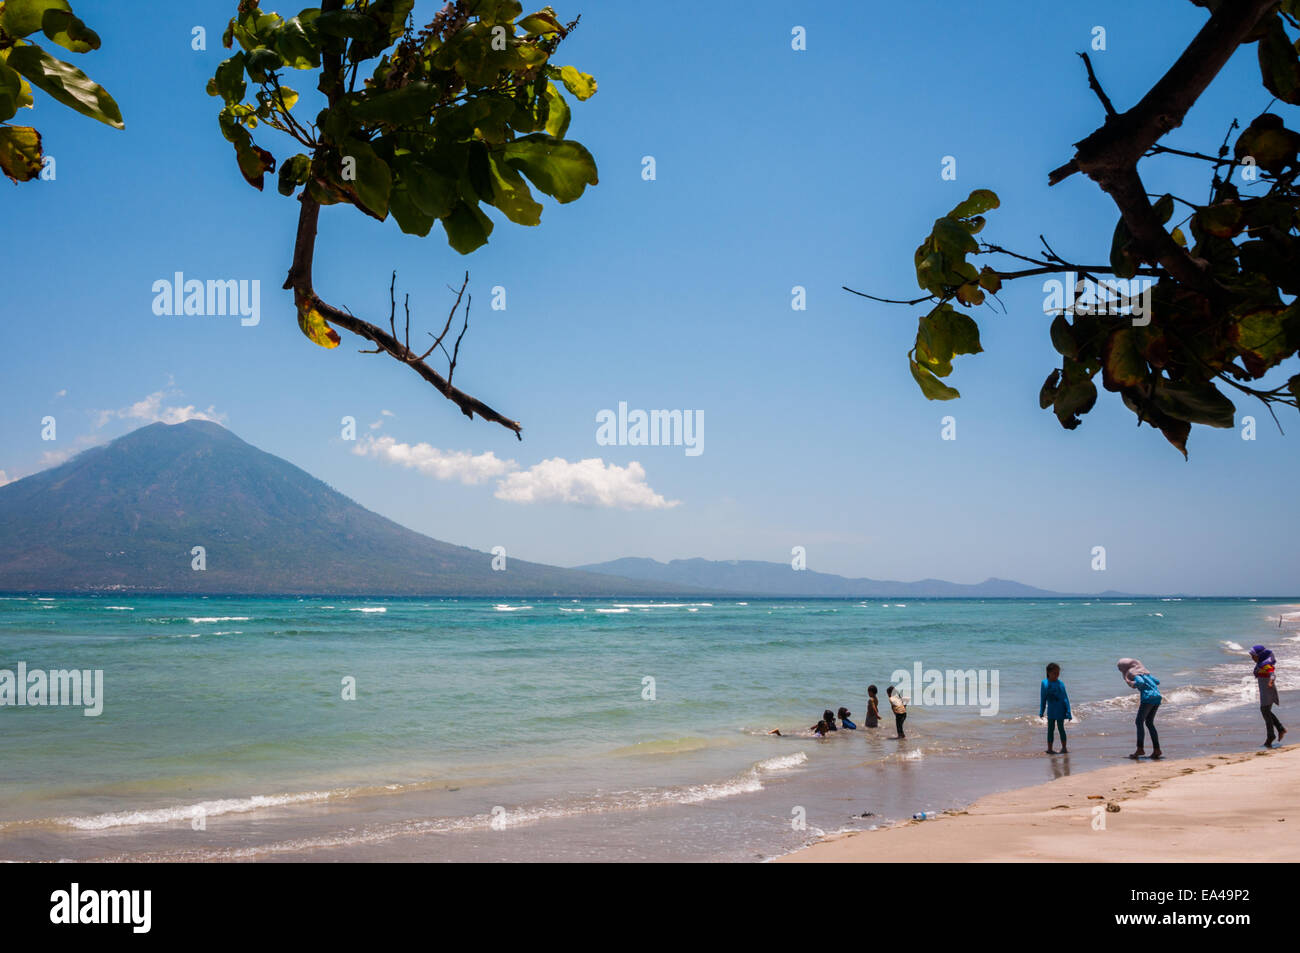 Menschen, die Freizeit an einem Strand mit Blick auf die Boleng-Straße und den Berg Boleng (Adonara-Insel) haben; fotografiert auf der Insel Lembata, Indonesien. Stockfoto